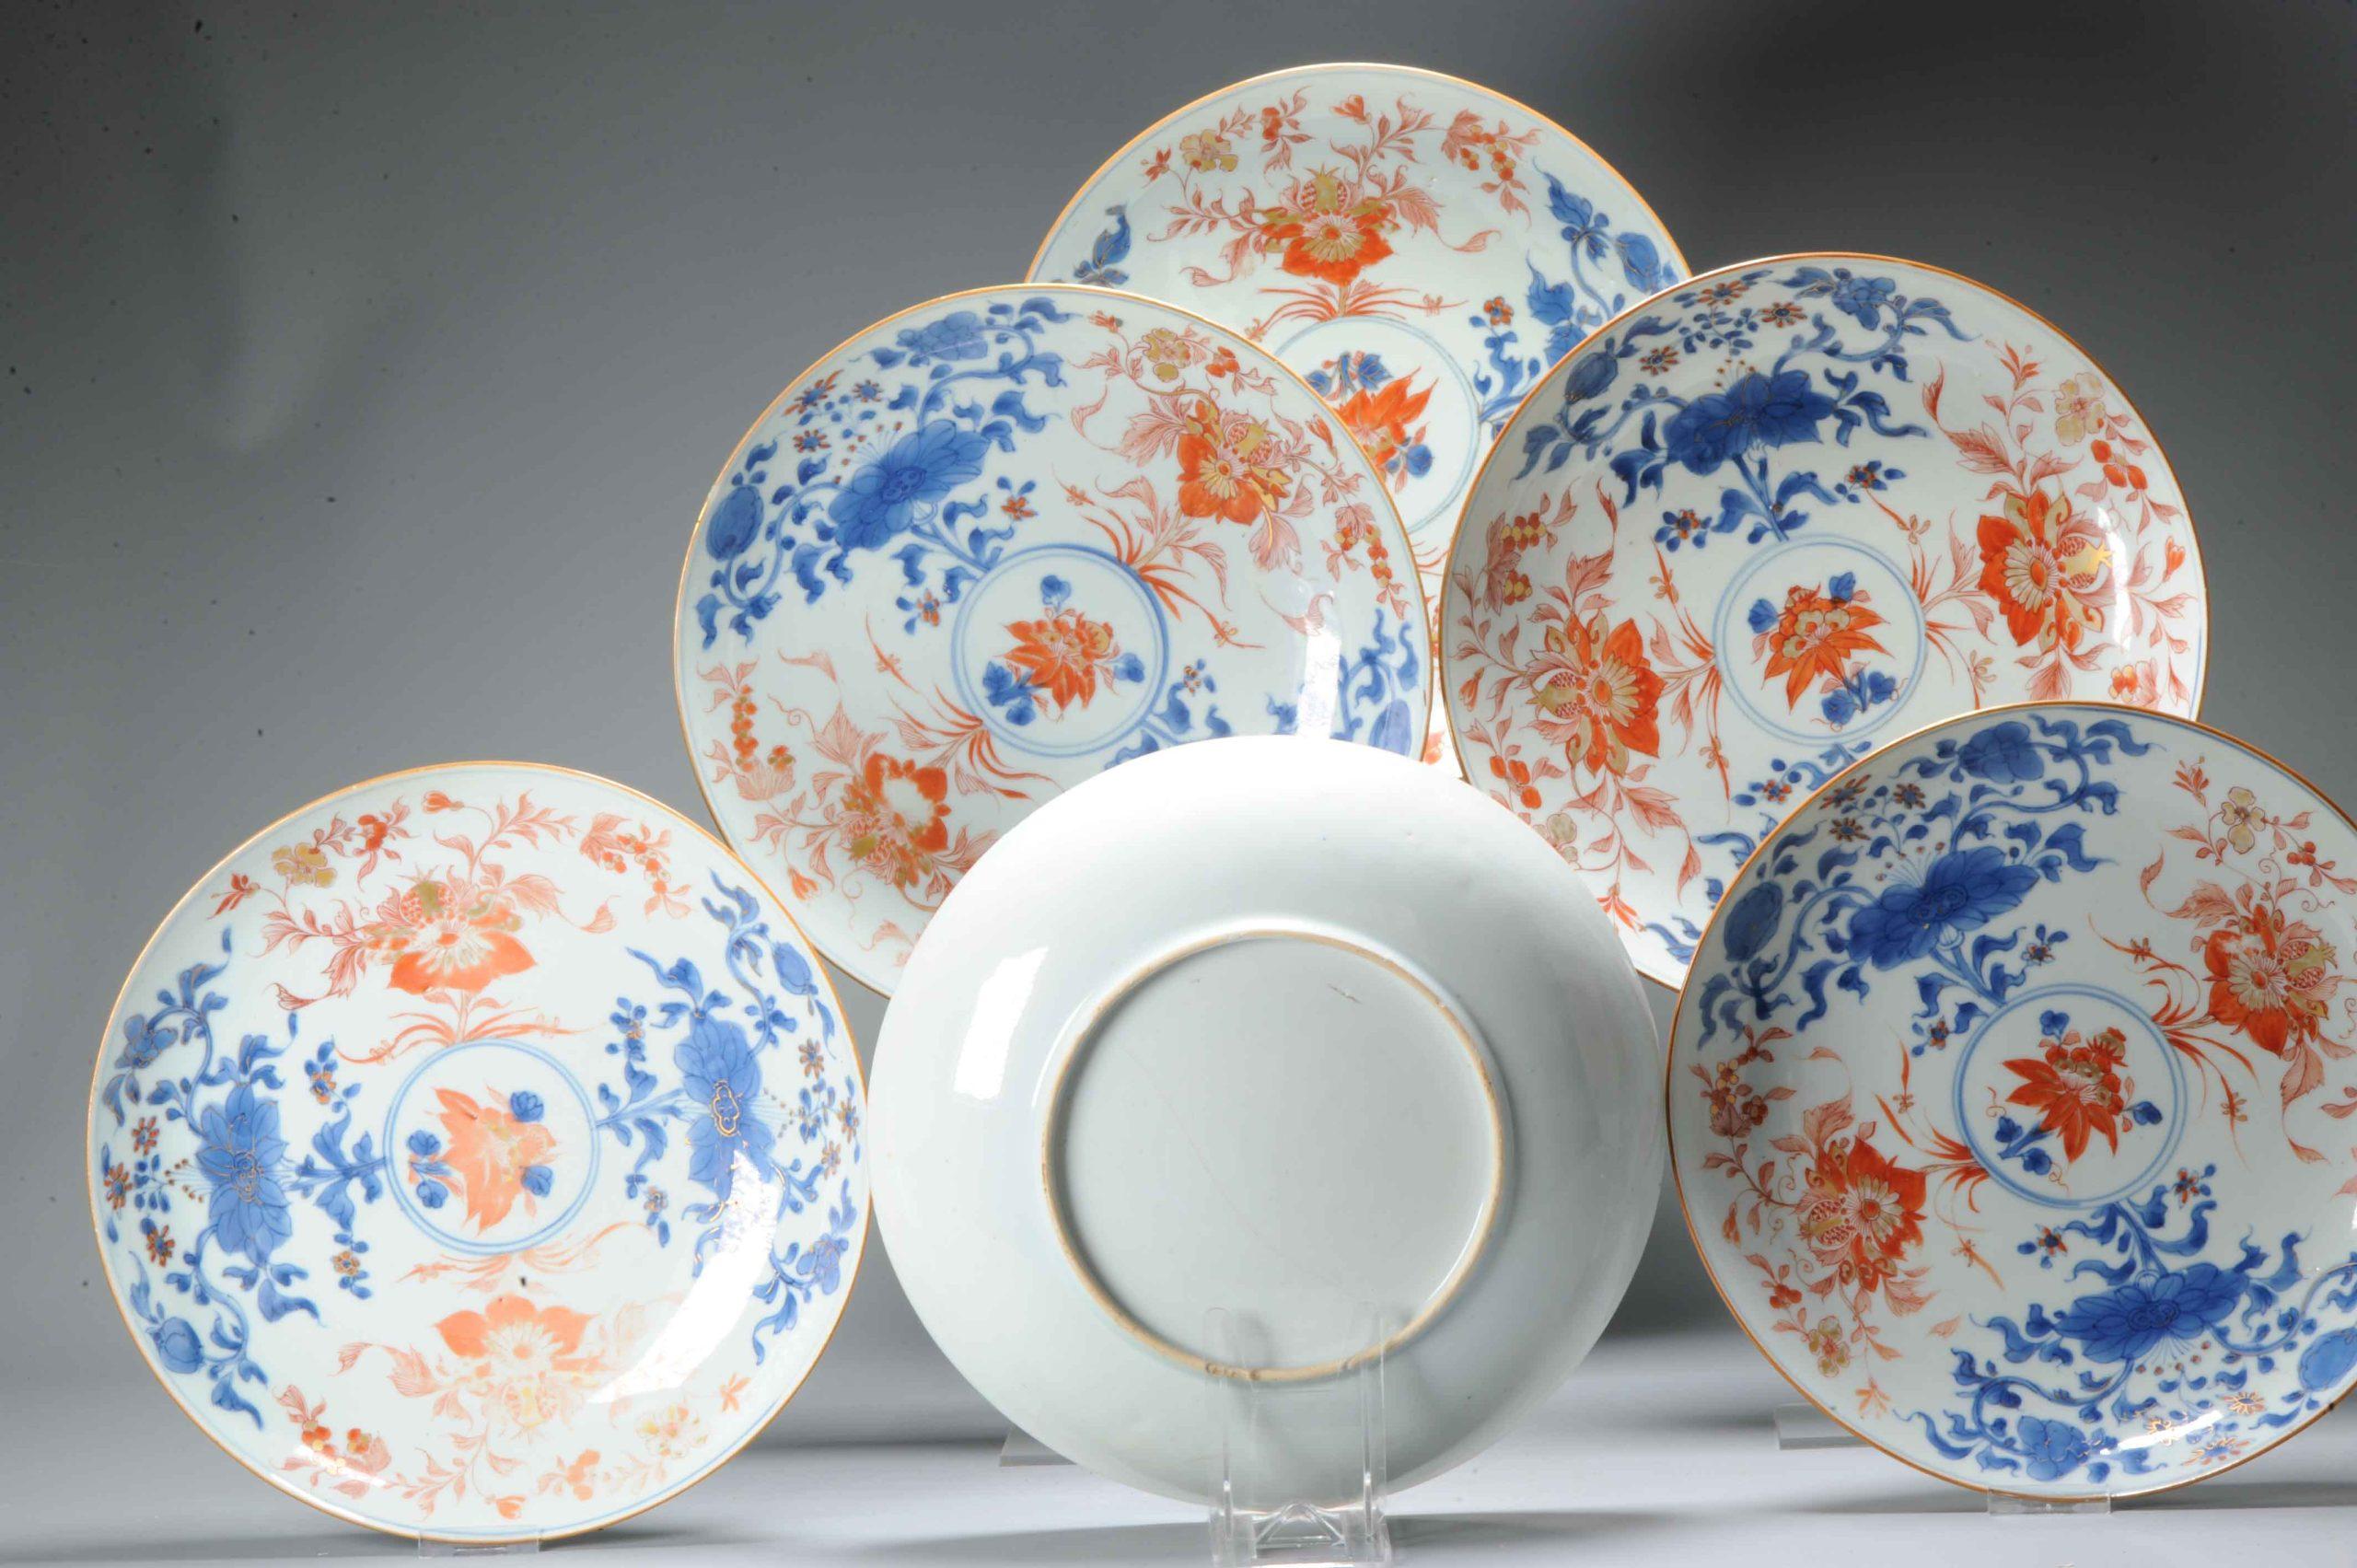 Große Größe und schöne und hohe Qualität Kangxi Tafelservice in Imari-Palette. Die Teller zeigen alle ein florales Design in der Umrandung und einem Teil des zentralen Tellers.

Zusätzliche Informationen:
MATERIAL: Porzellan &